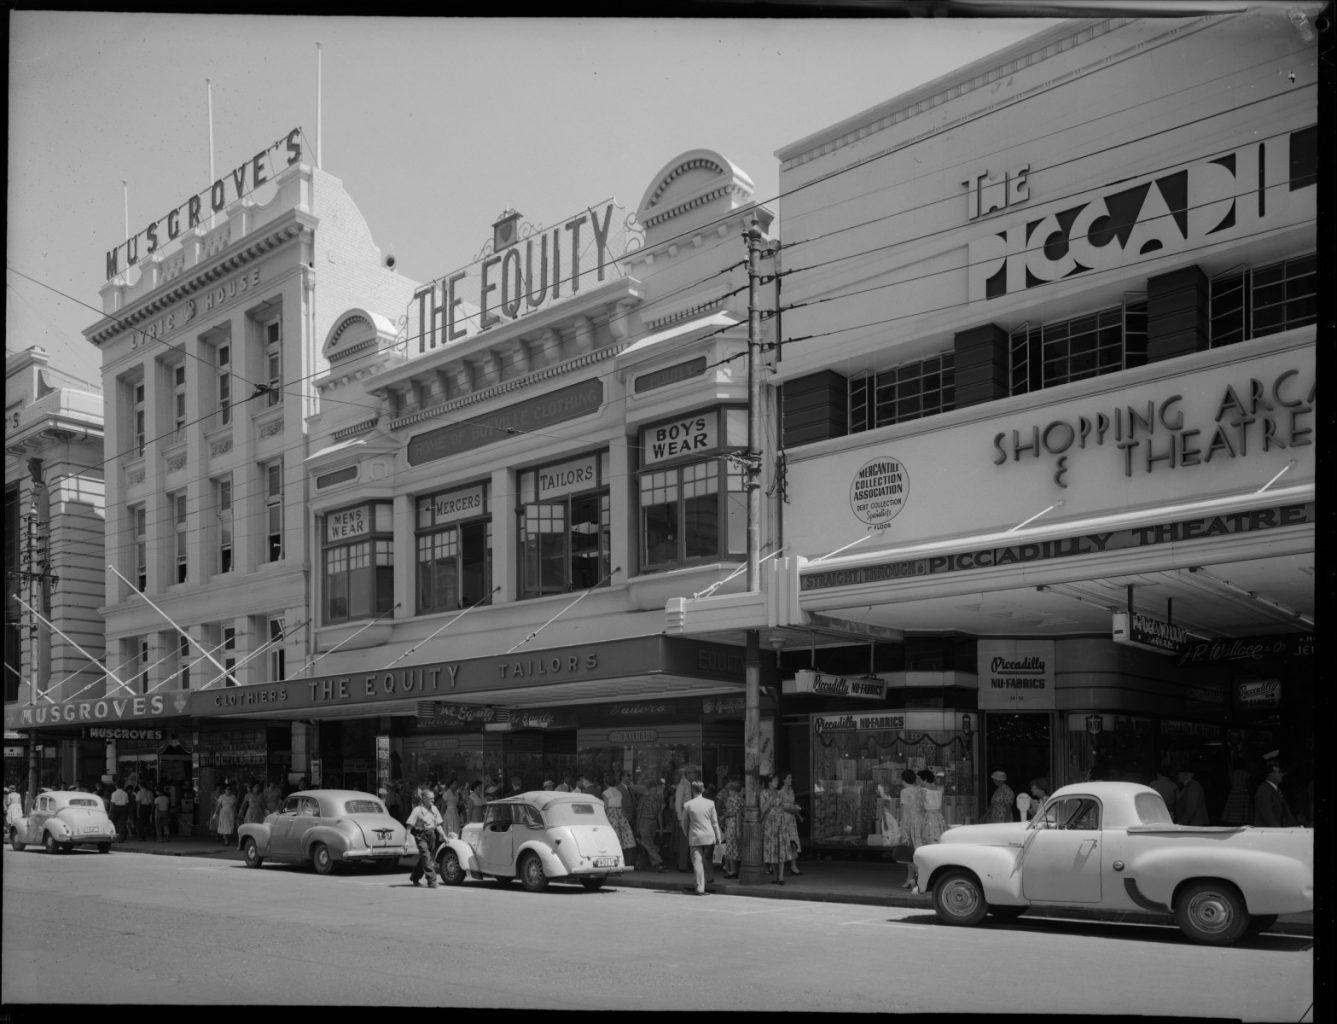 Perth vintage cinemas, Piccadilly Theatre Arcade 1958